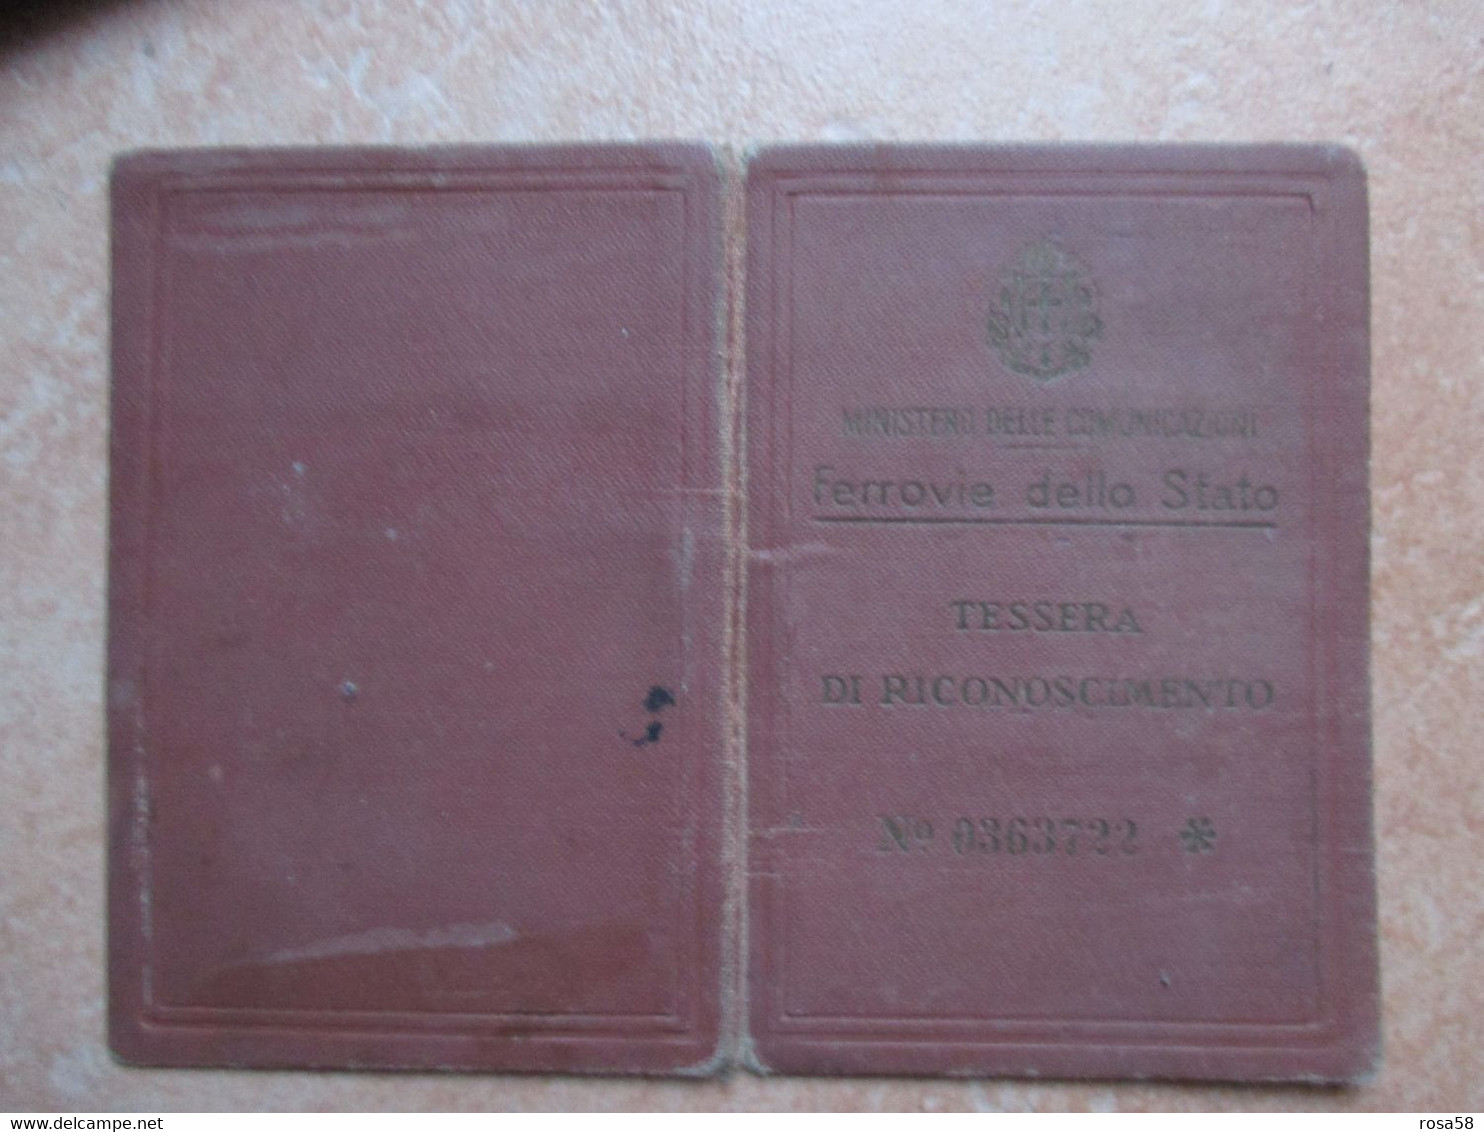 Italia TESSERA Riconoscimento Ferrovie Dello Stato Ministero Delle Comunicazioni 1935 Figlio Controllore - Europa